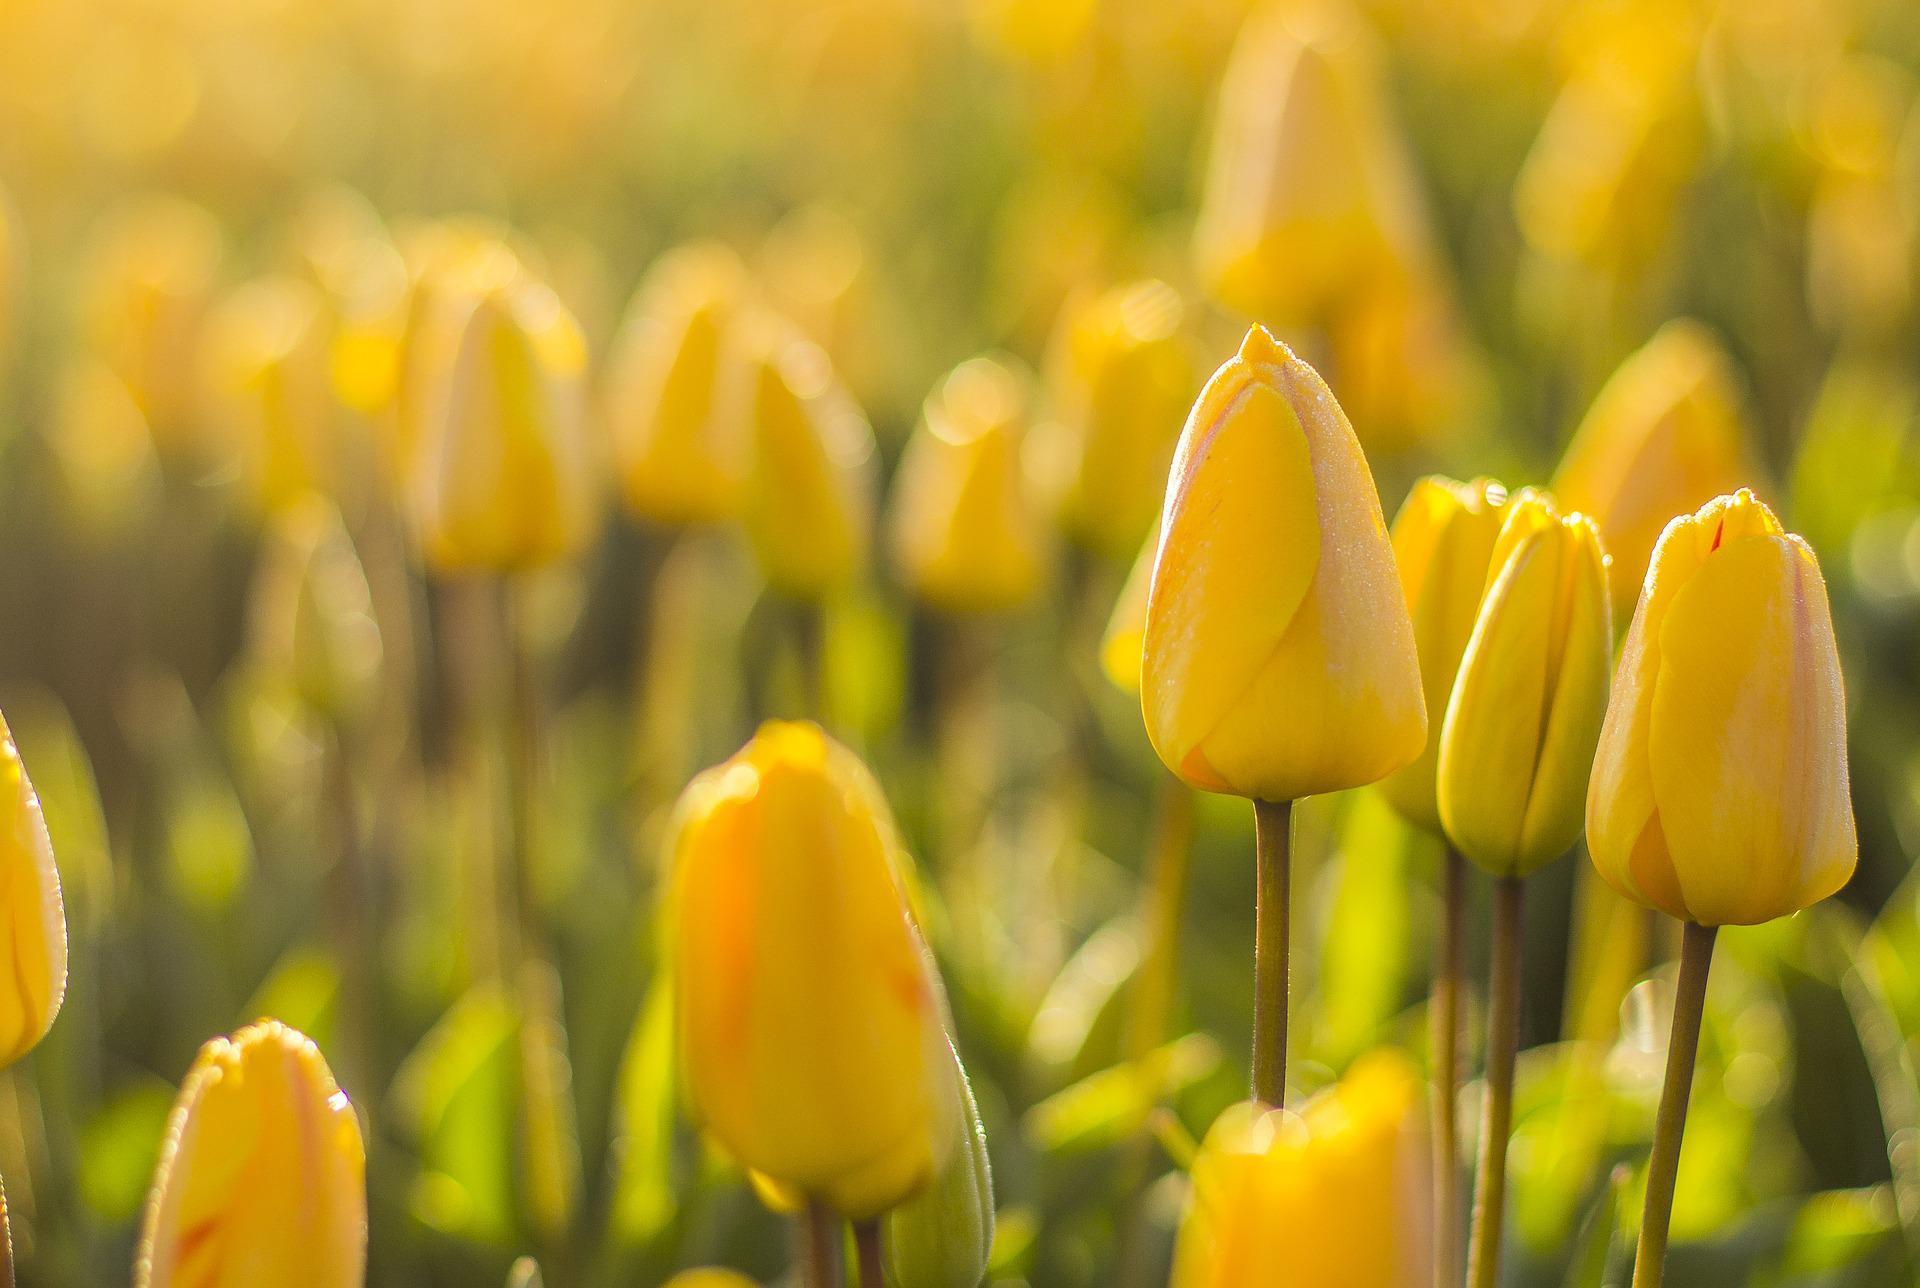 Hoa tulip vàng biểu tượng cho niềm hy vọng và thịnh vượng. Hãy xem hình ảnh để thấy sự tươi tắn, tràn đầy năng lượng của hoa tulip vàng.